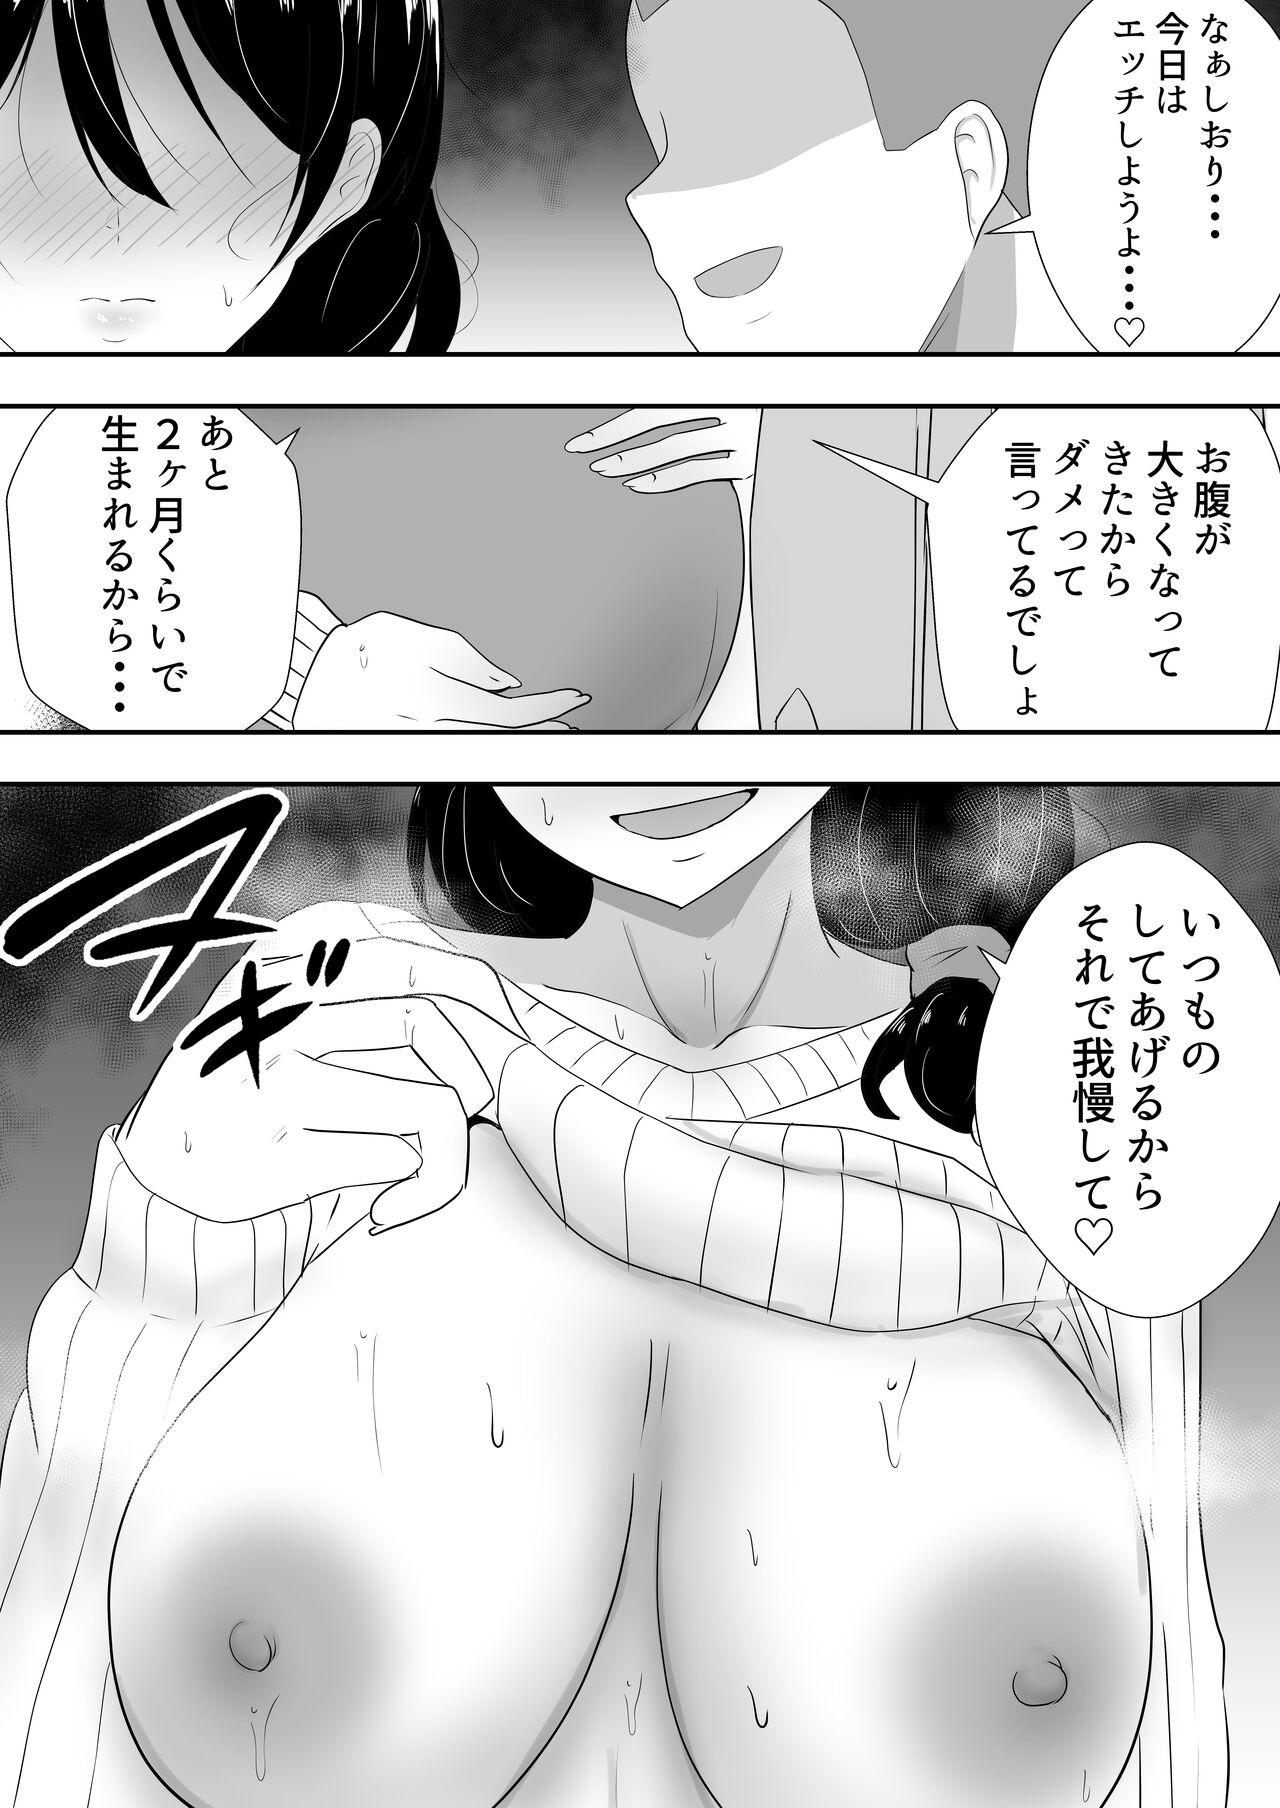 Speculum Tomokano kaachan4 kakioroshi - Original Hoe - Page 6